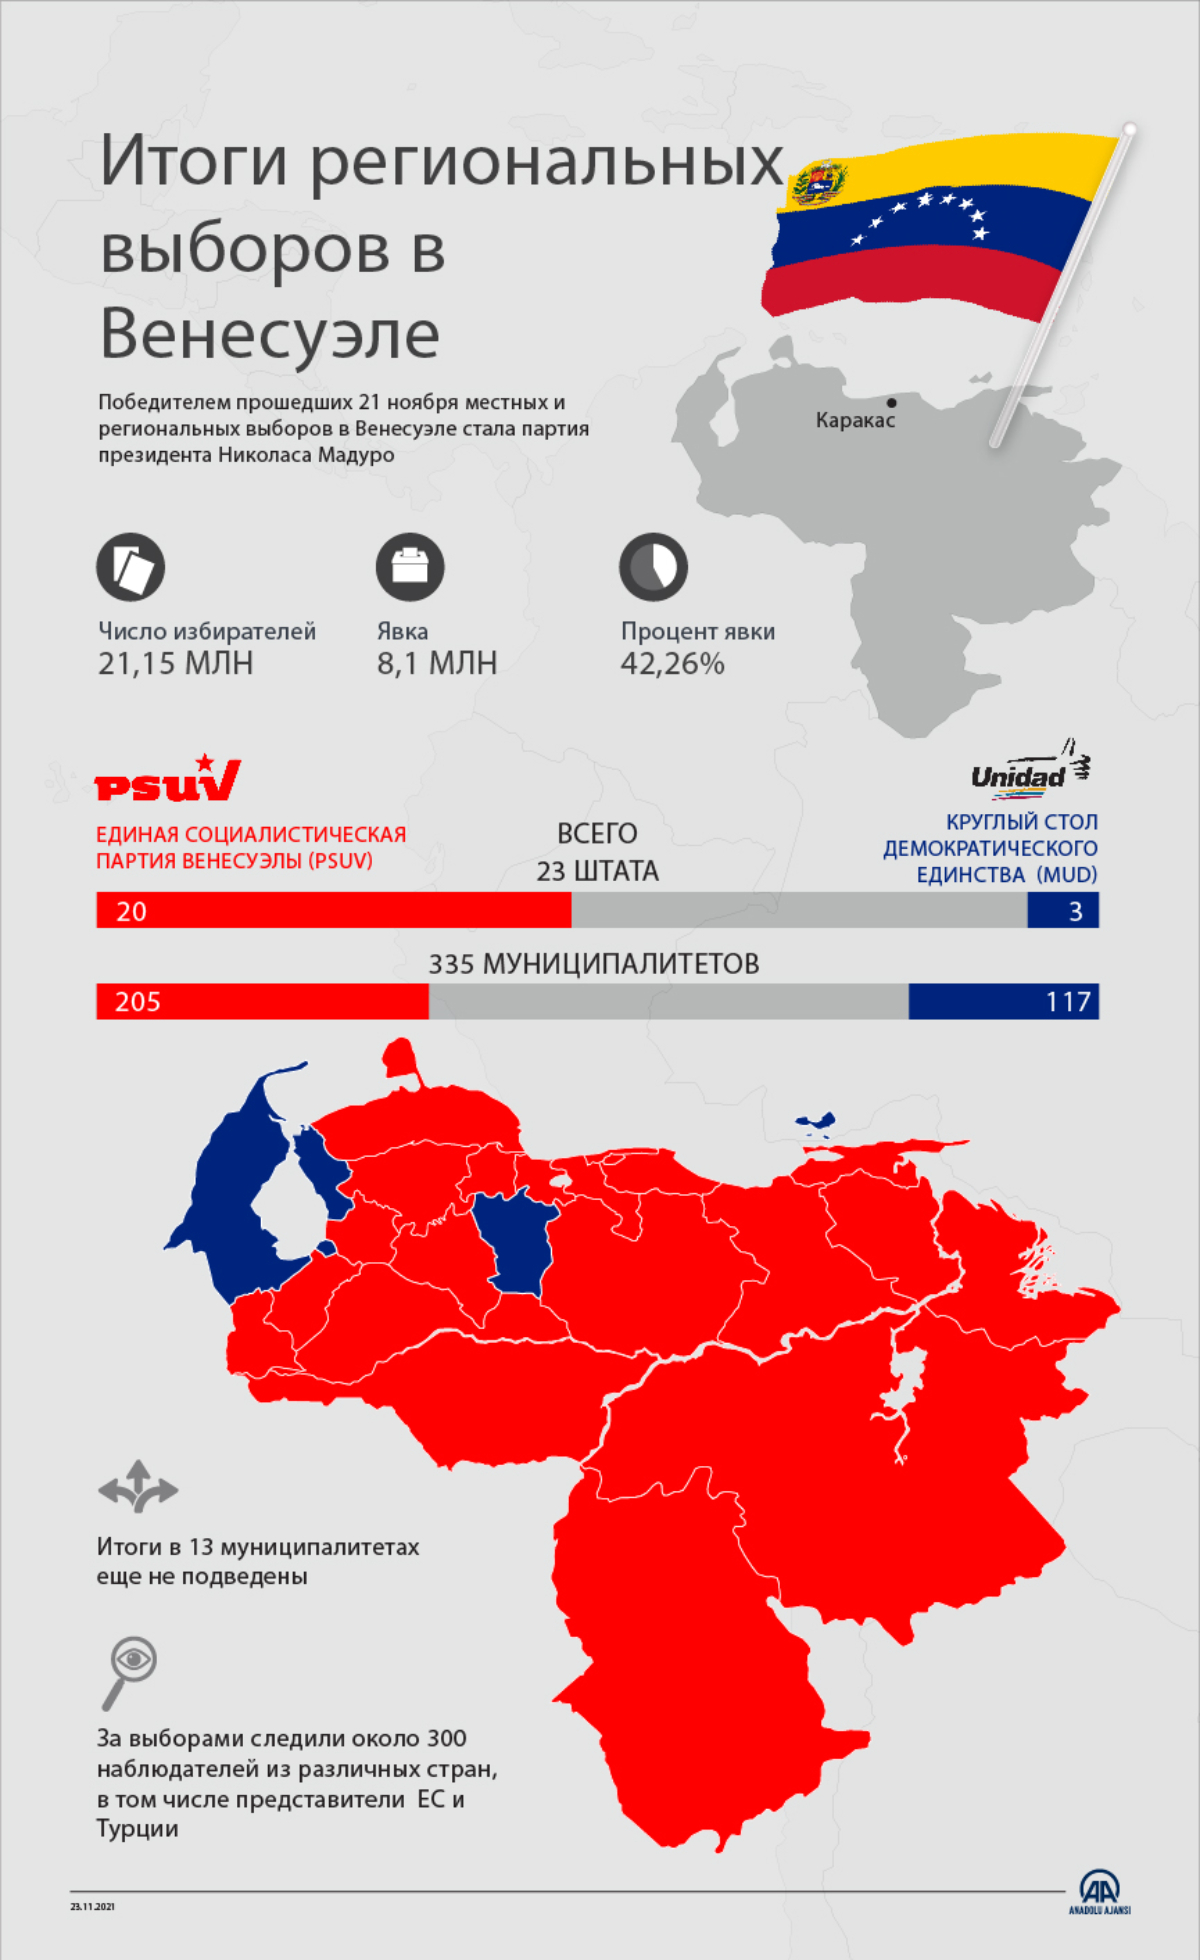 Итоги региональных выборов в Венесуэле